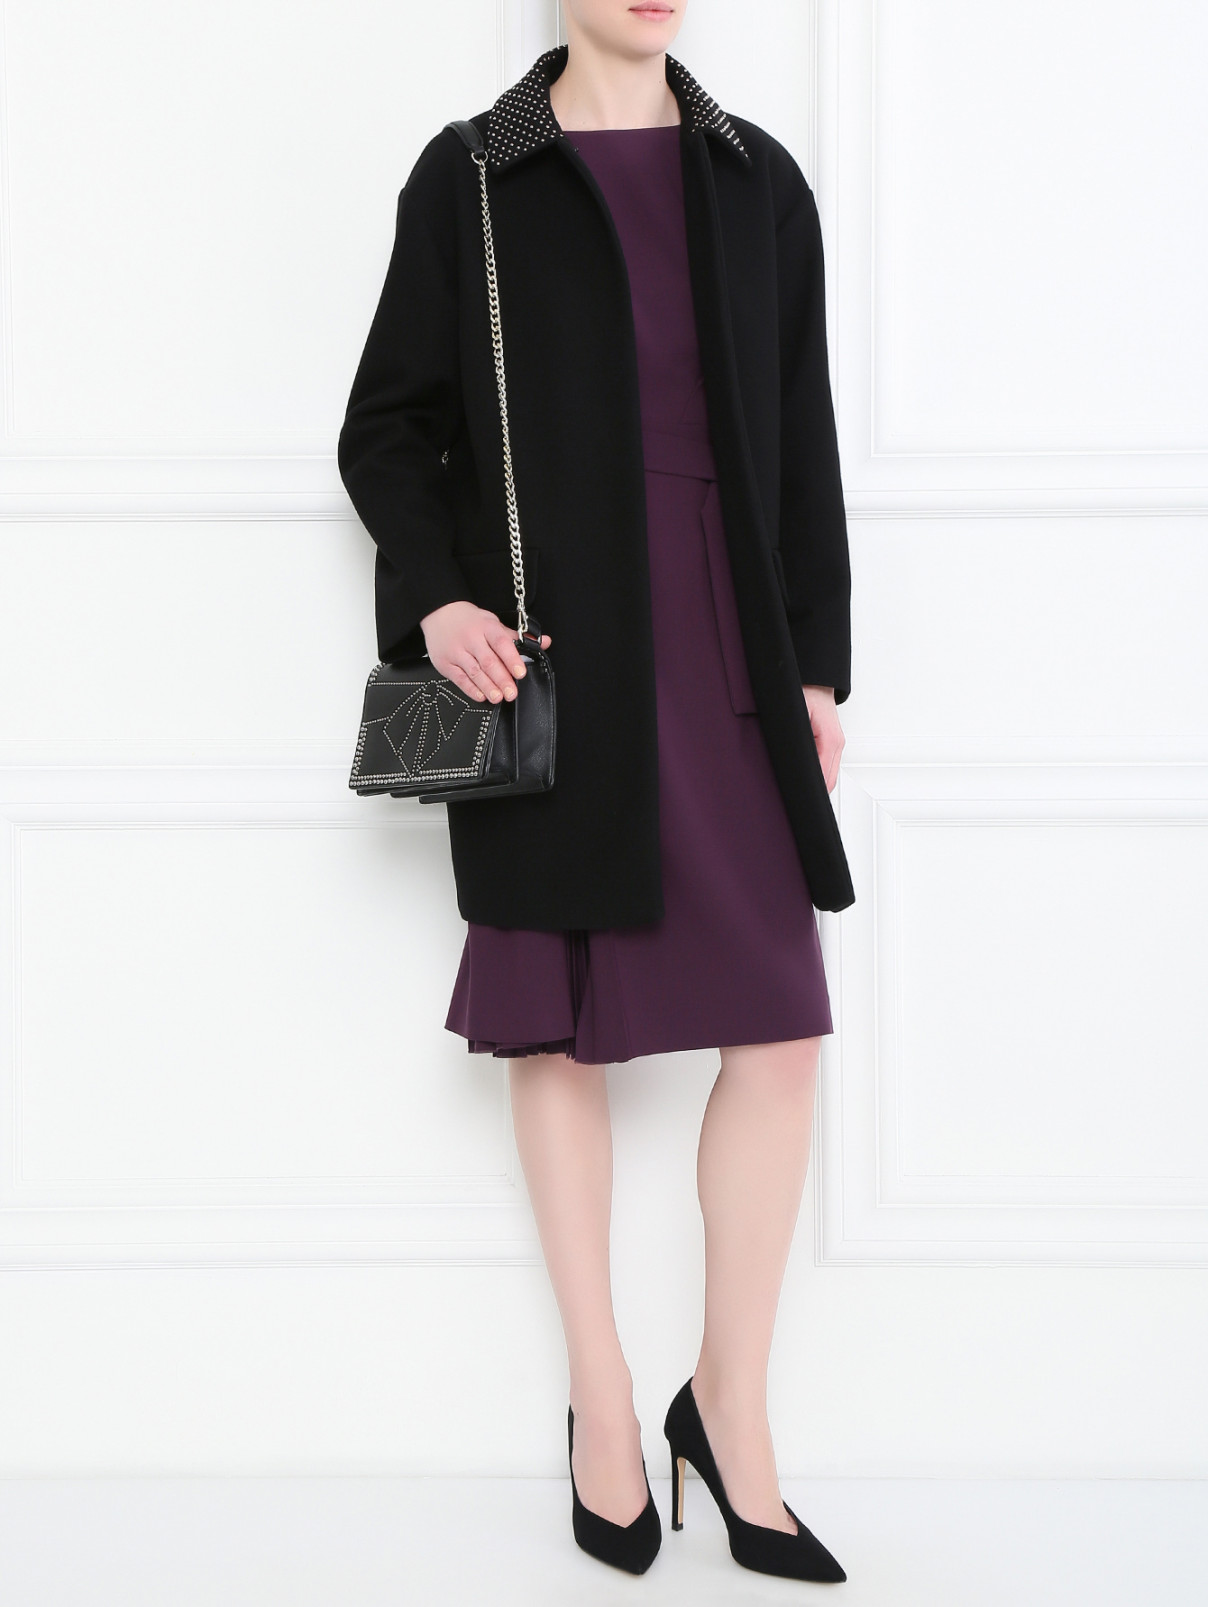 Пальто из шерсти с декором Moschino Boutique  –  Модель Общий вид  – Цвет:  Черный